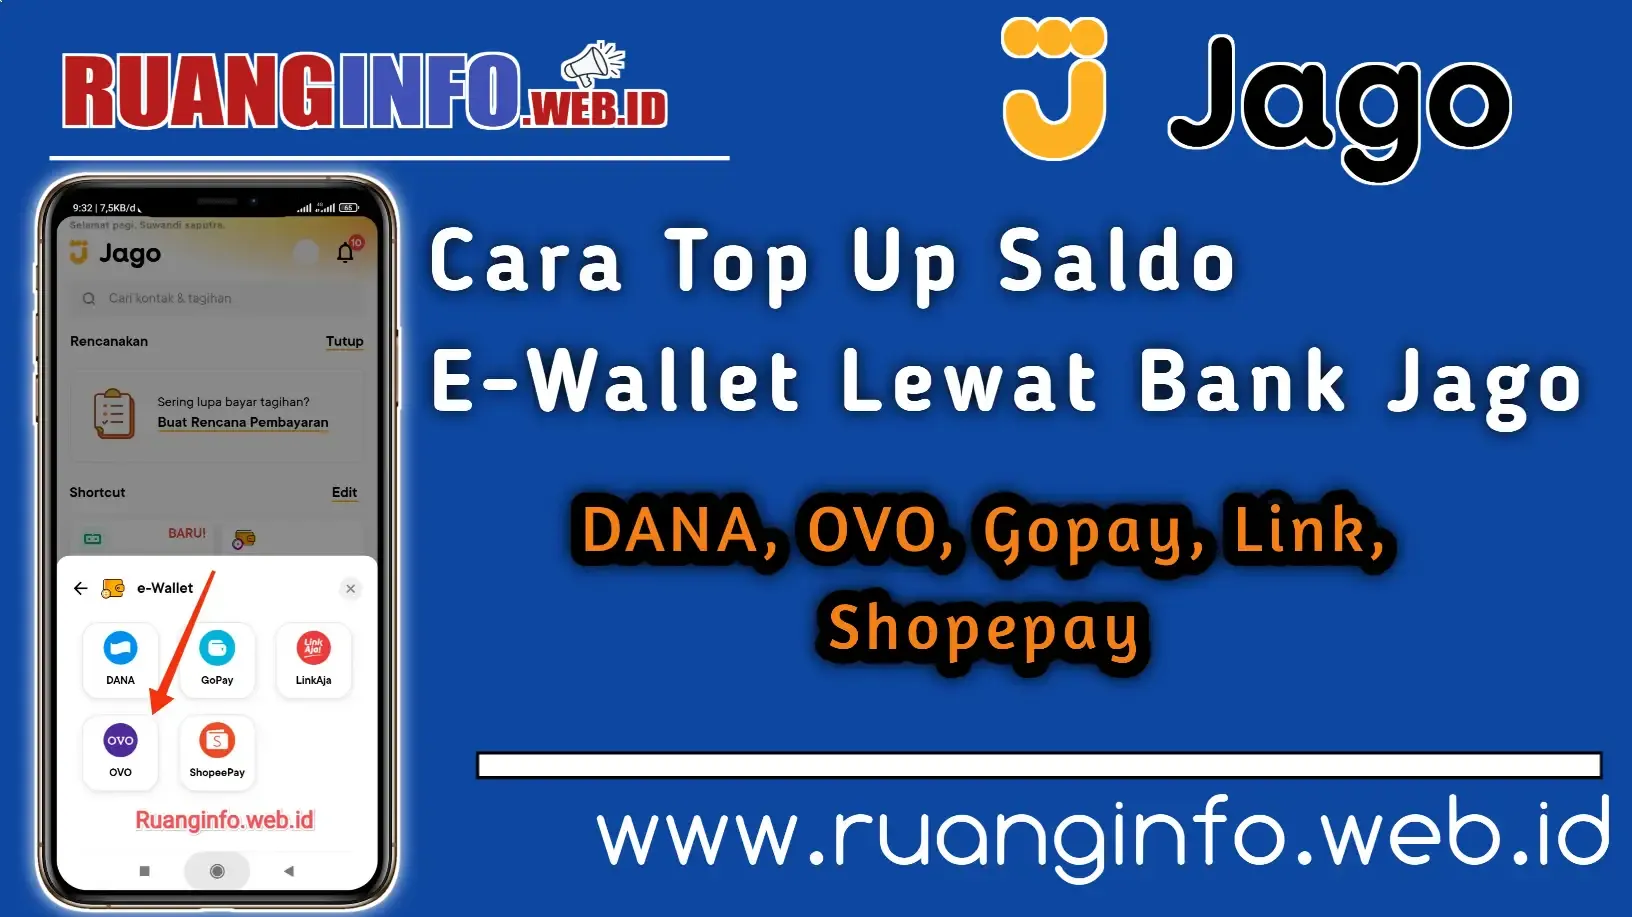 Cara Top Up Saldo E-Wallet Lewat Bank Jago